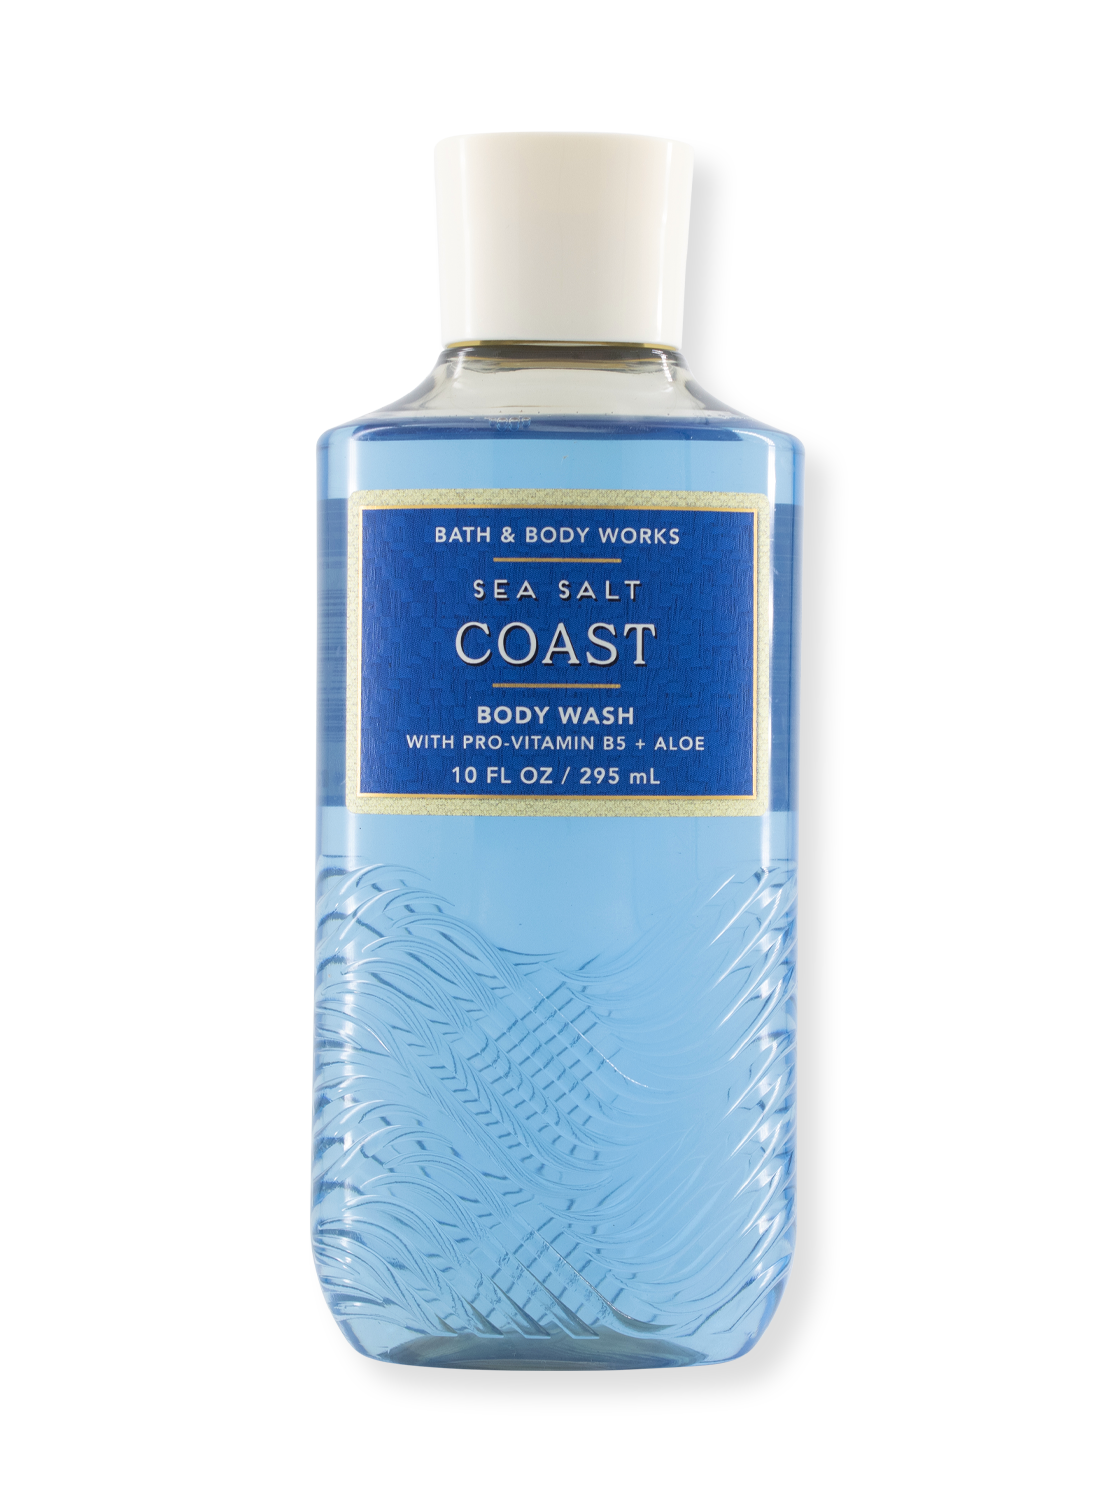 Gel de douche / lavage du corps - Sea Salt Coast - Édition limitée - 295 ml